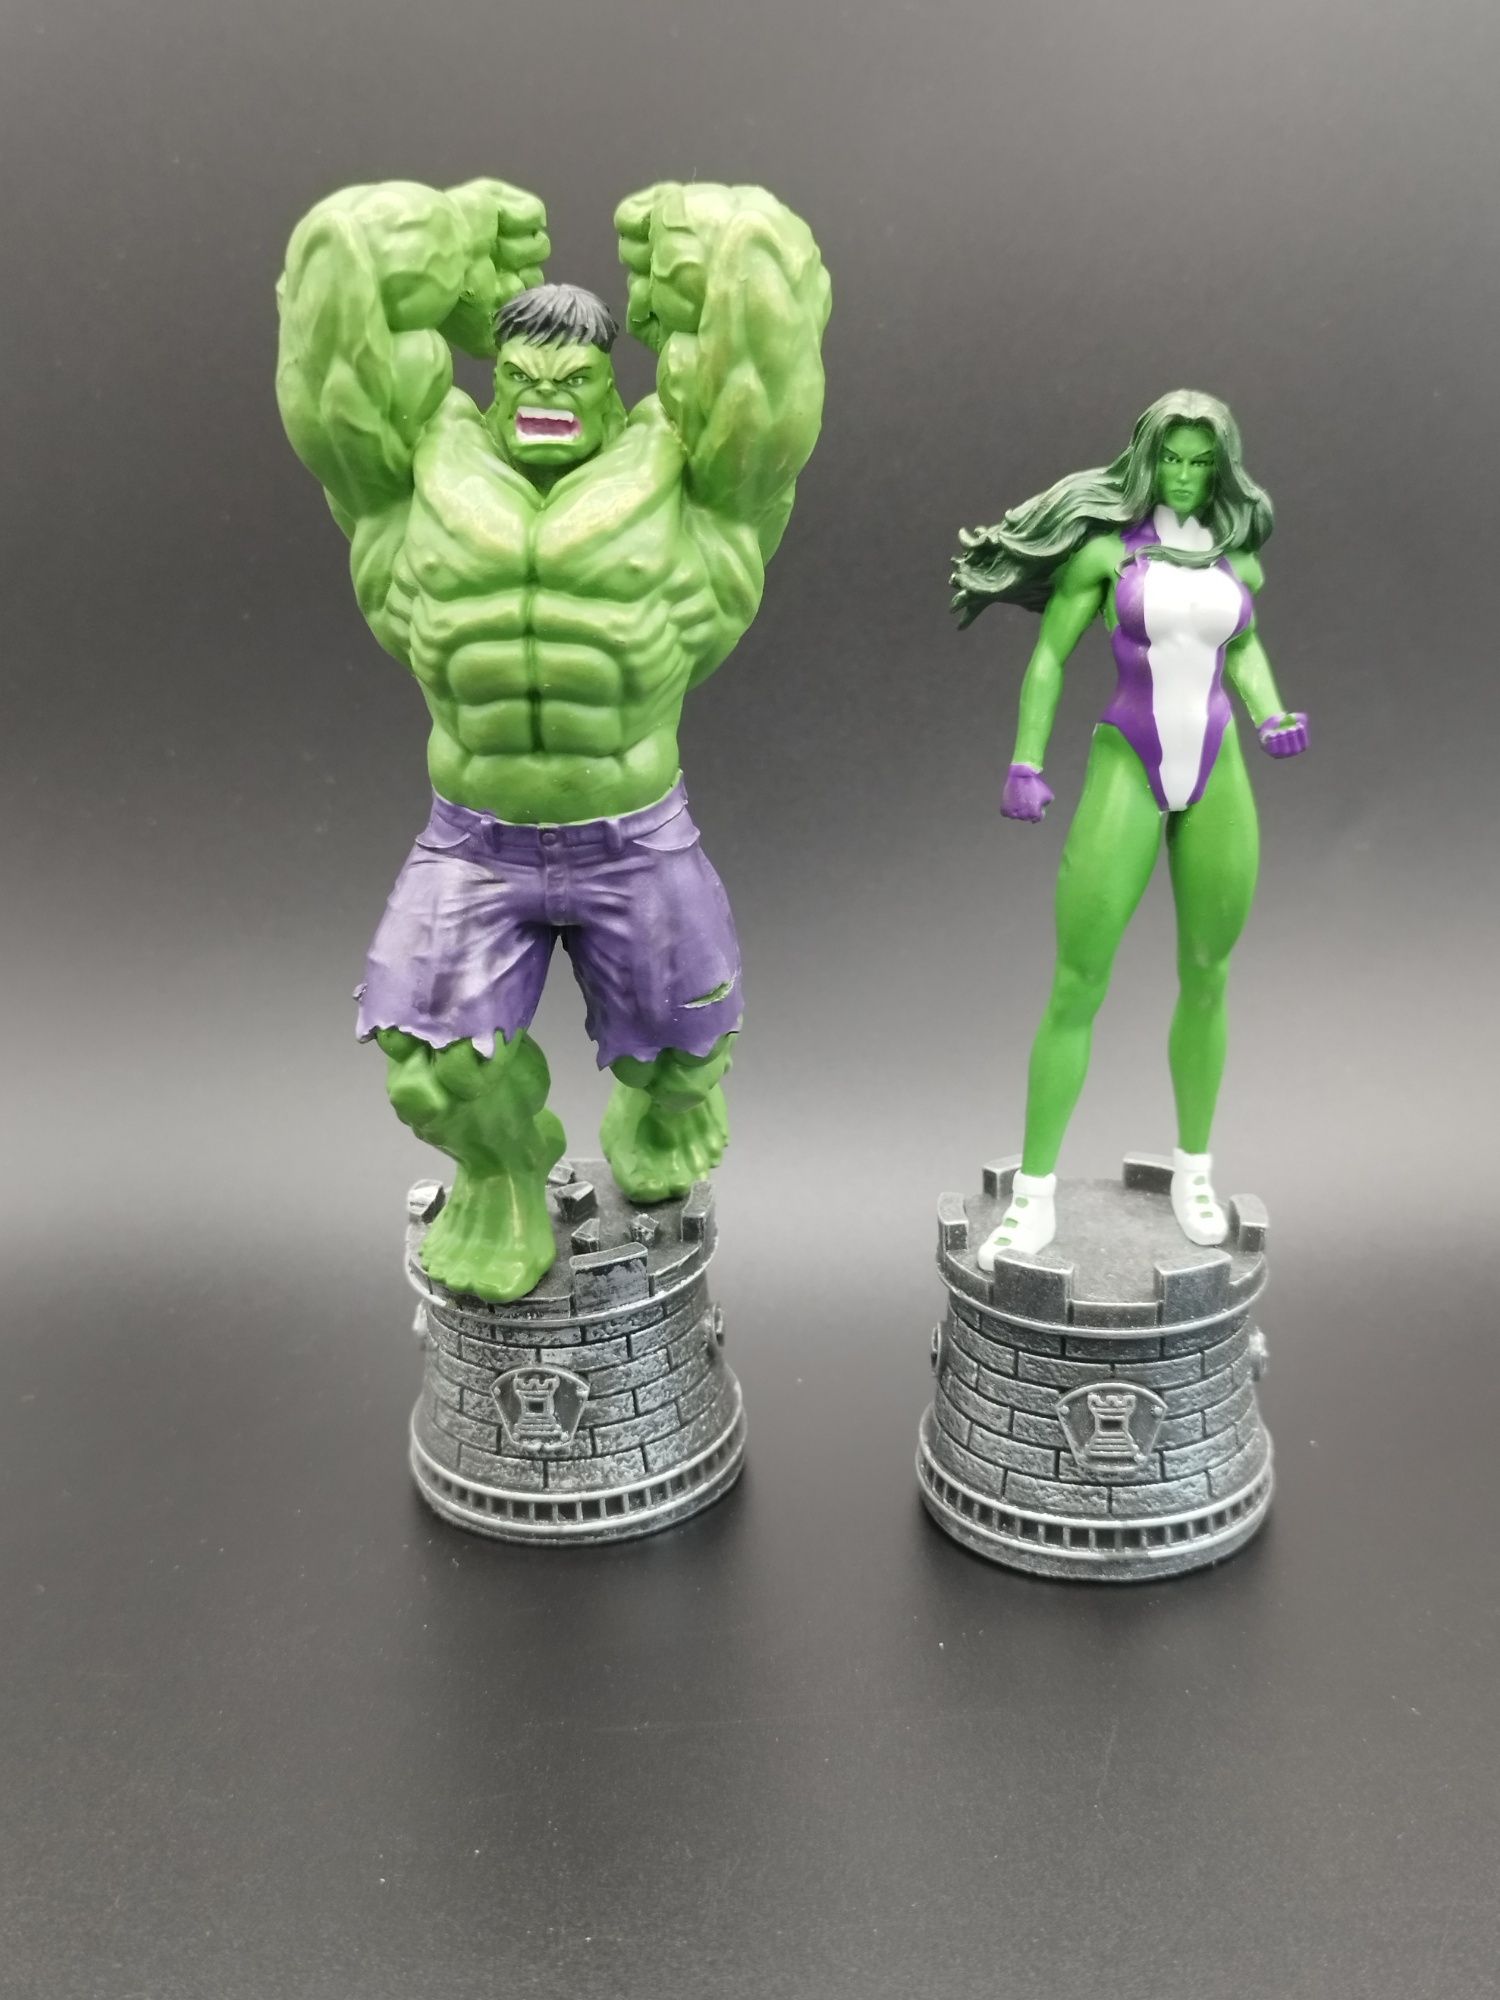 Zestaw Figurek Marvel szachowe Hulk i She Hulk ok 13 cm

piotr.trepko